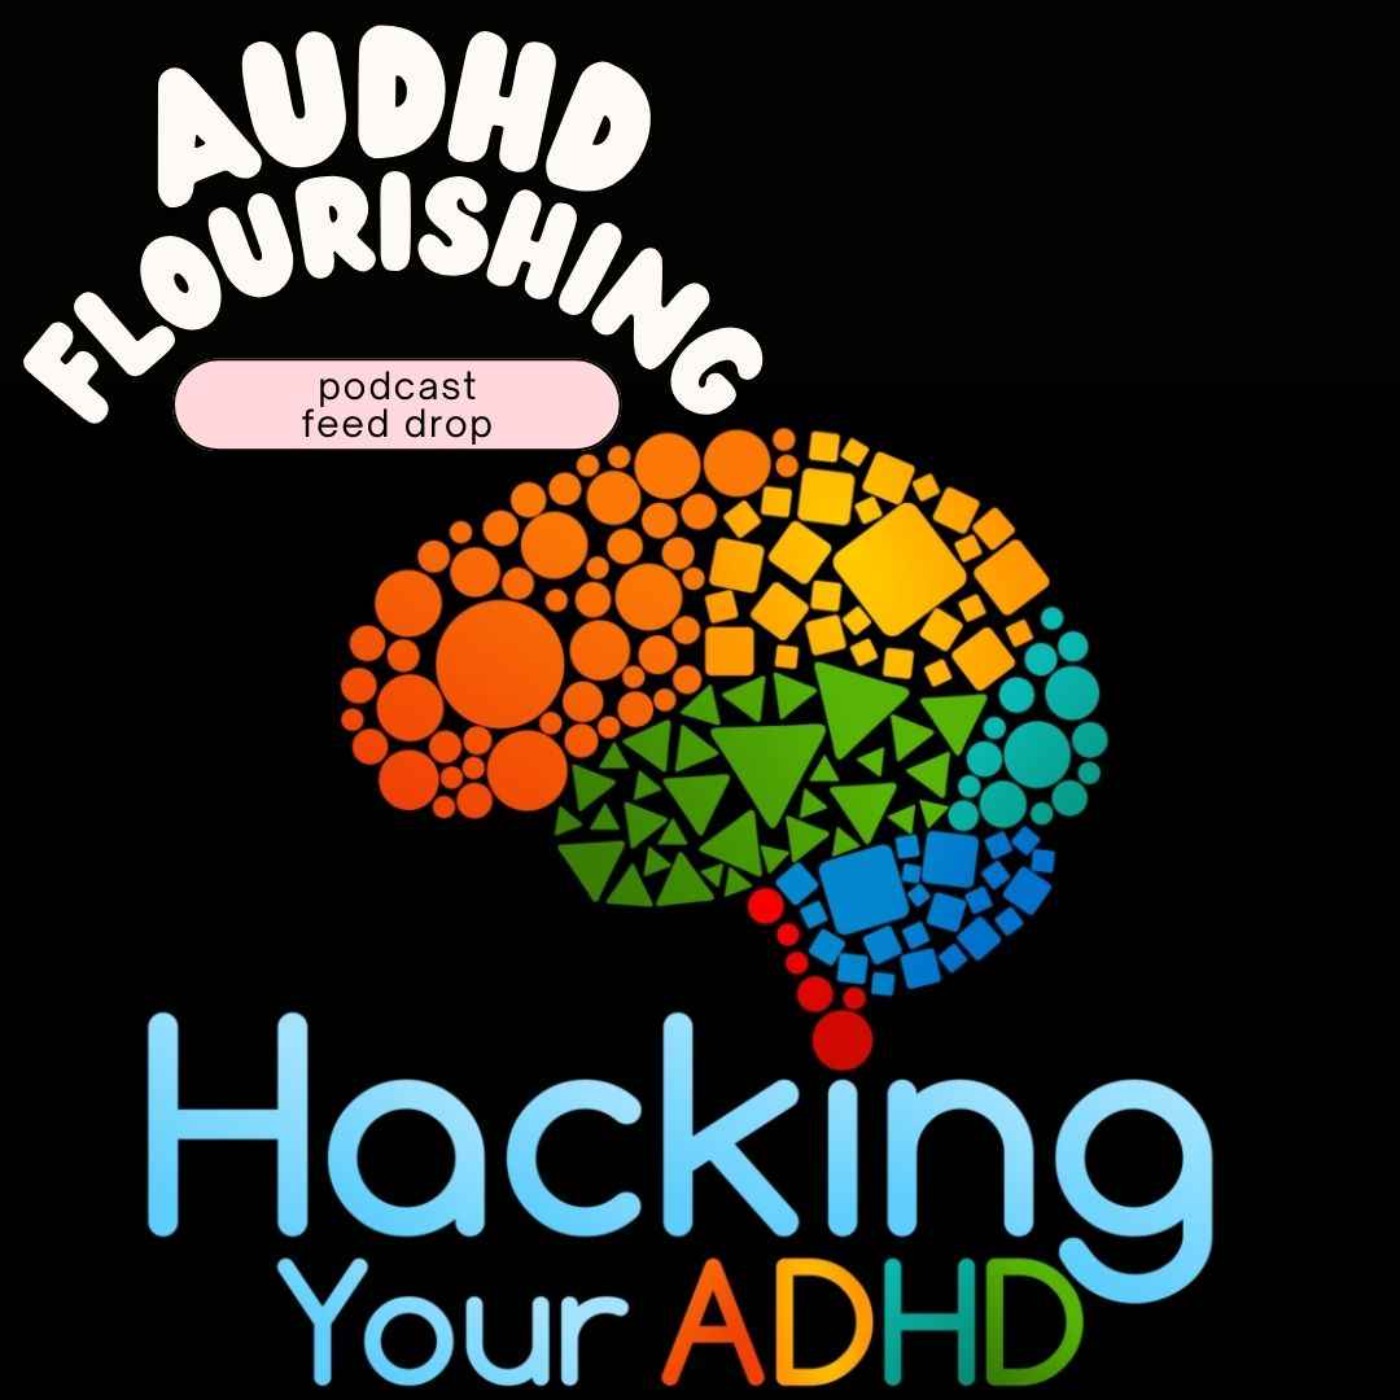 Bonus: Mattia on Hacking Your ADHD with William Curb